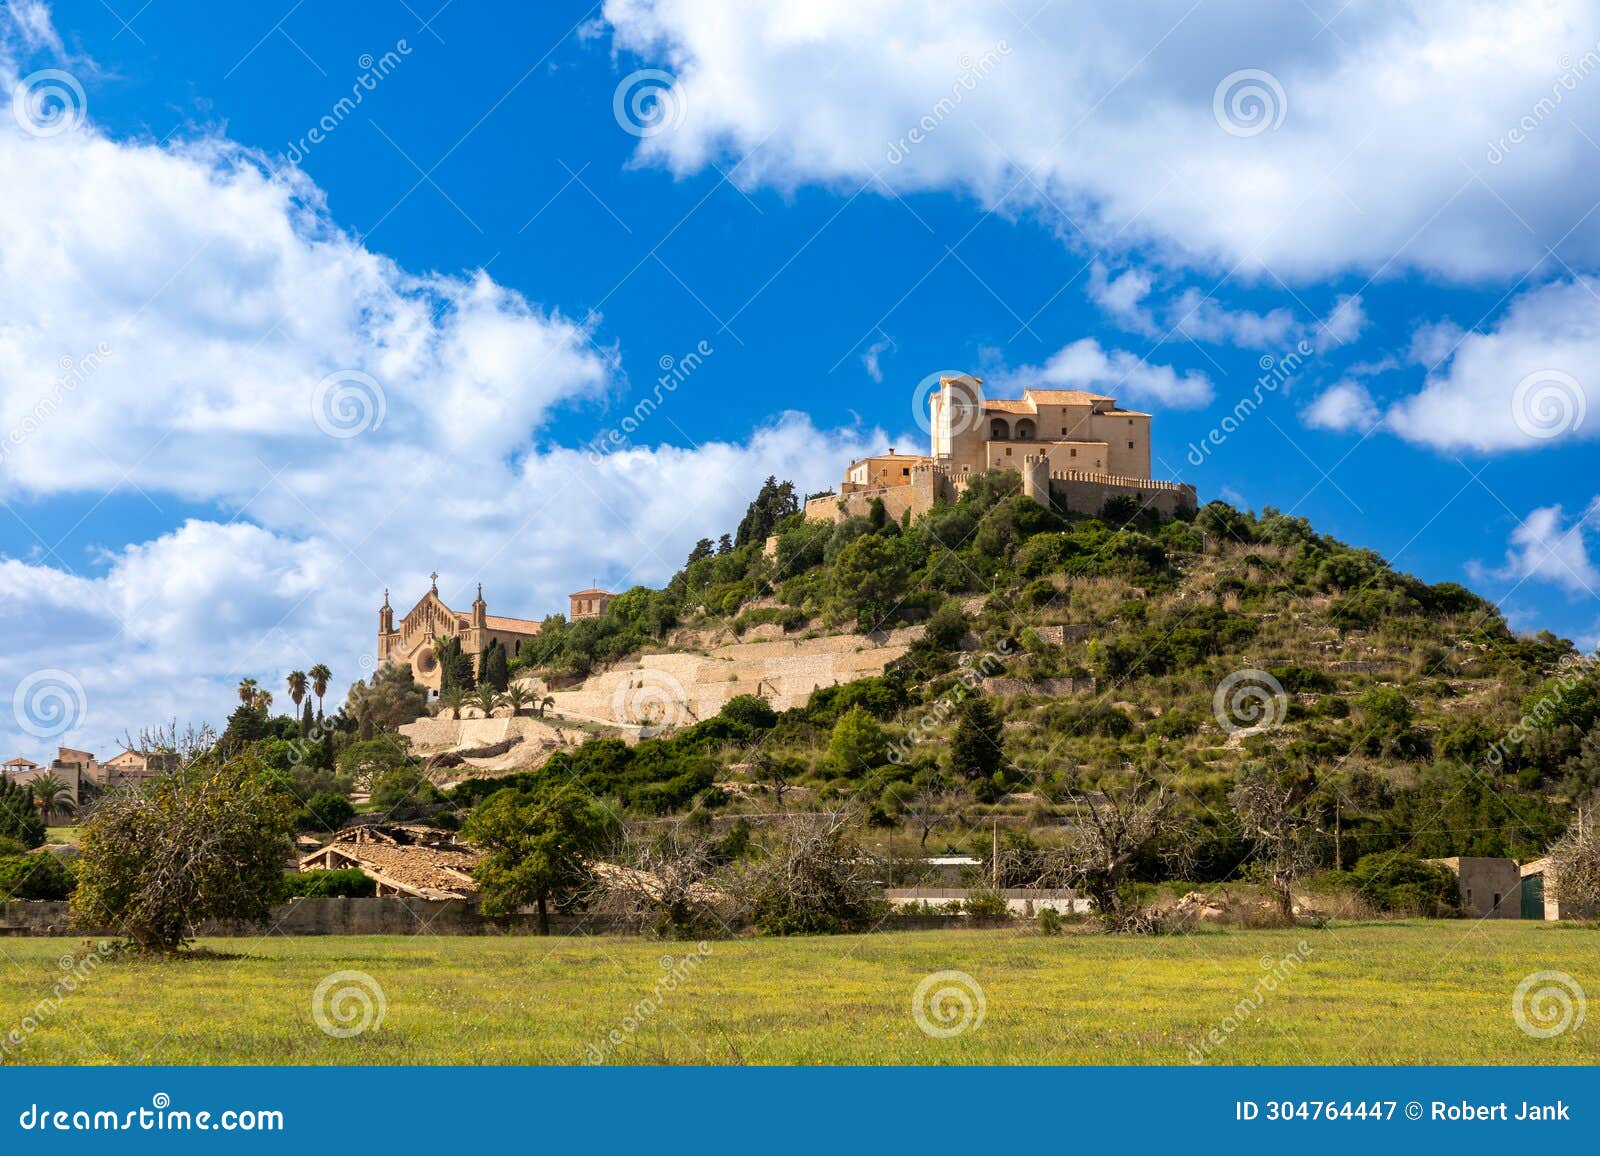 view of the castle hill of arta, mallorca